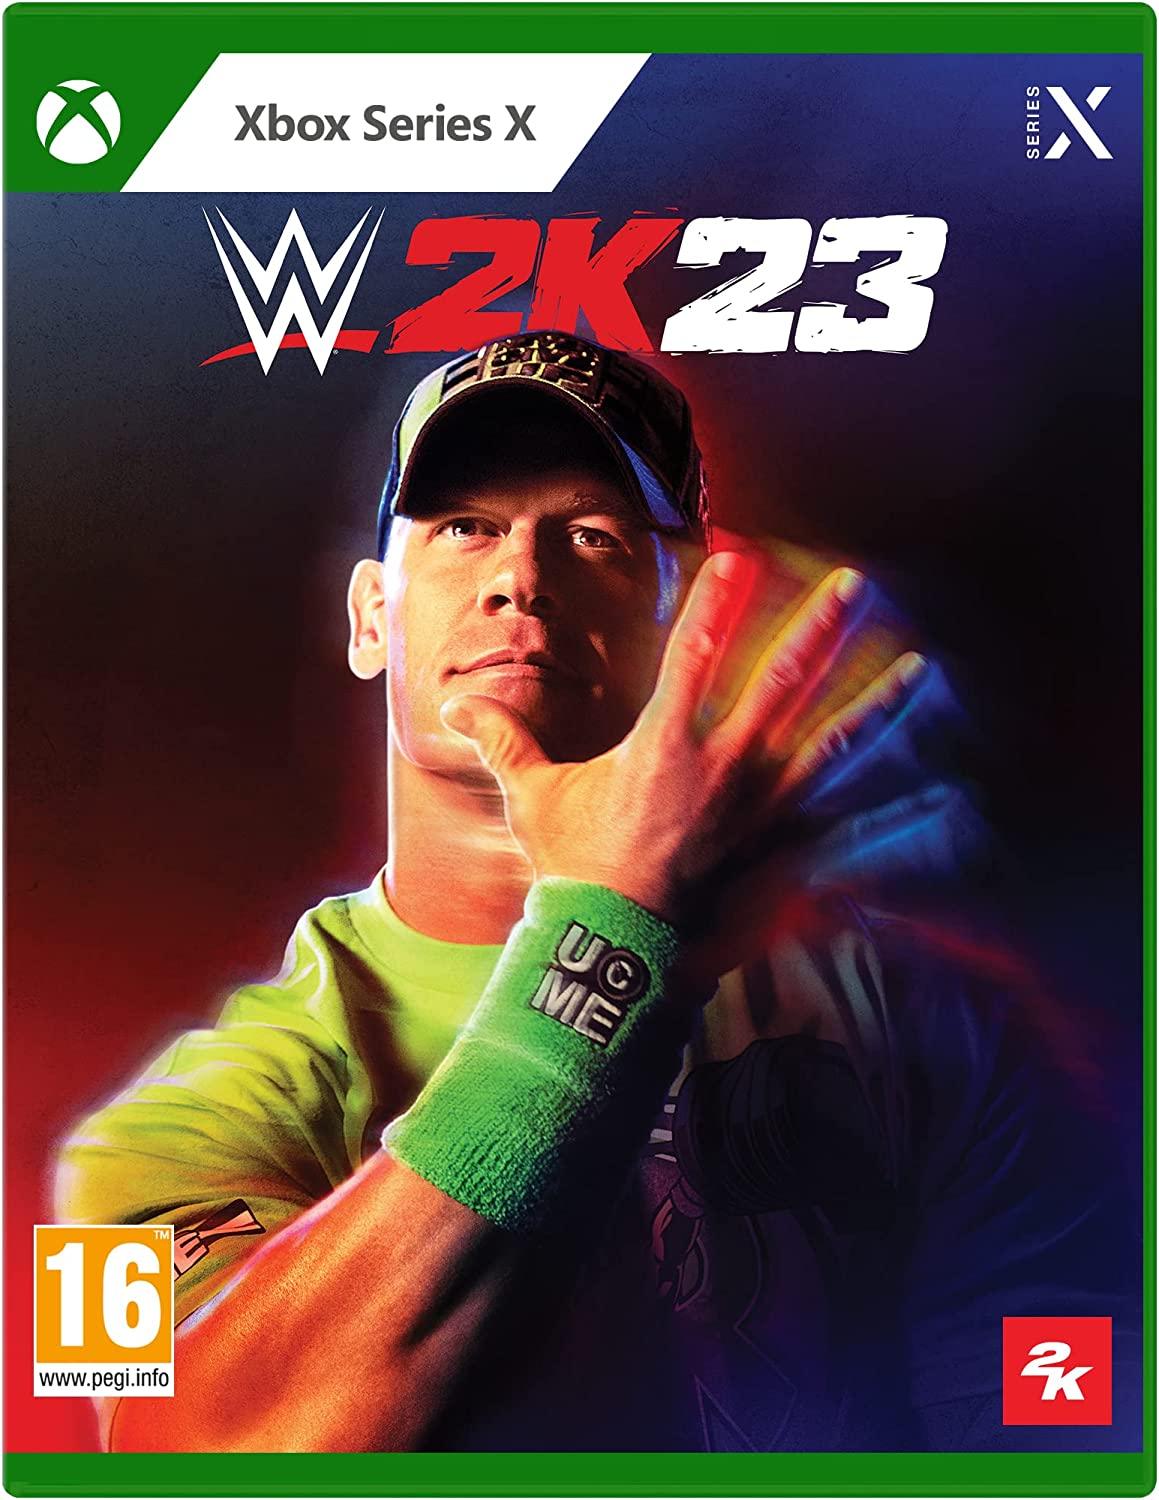 WWE 2K23 (Xbox Series X) - GameStore.mt | Powered by Flutisat